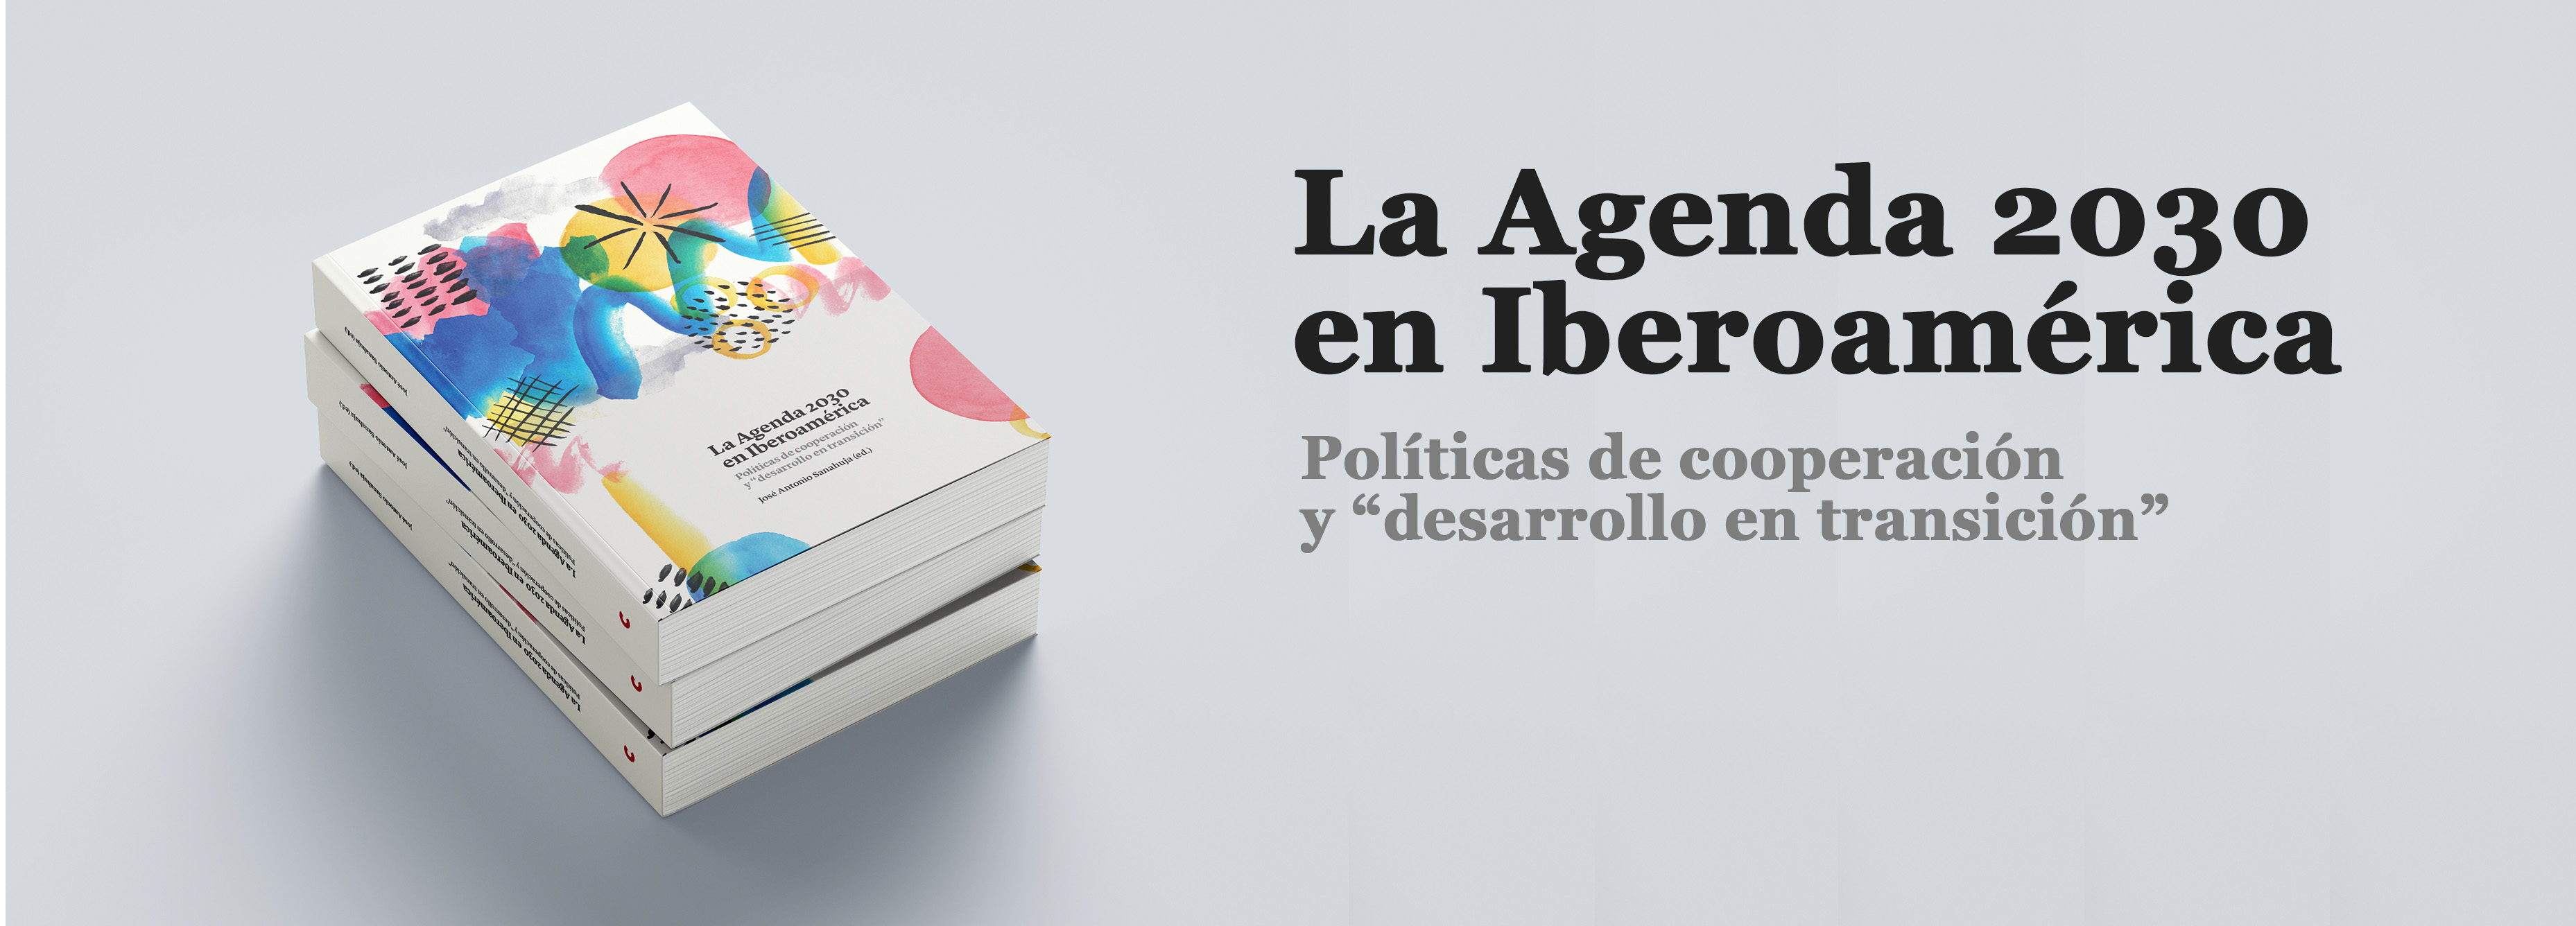 Libros "La Agenda 2030 en Iberoamérica"